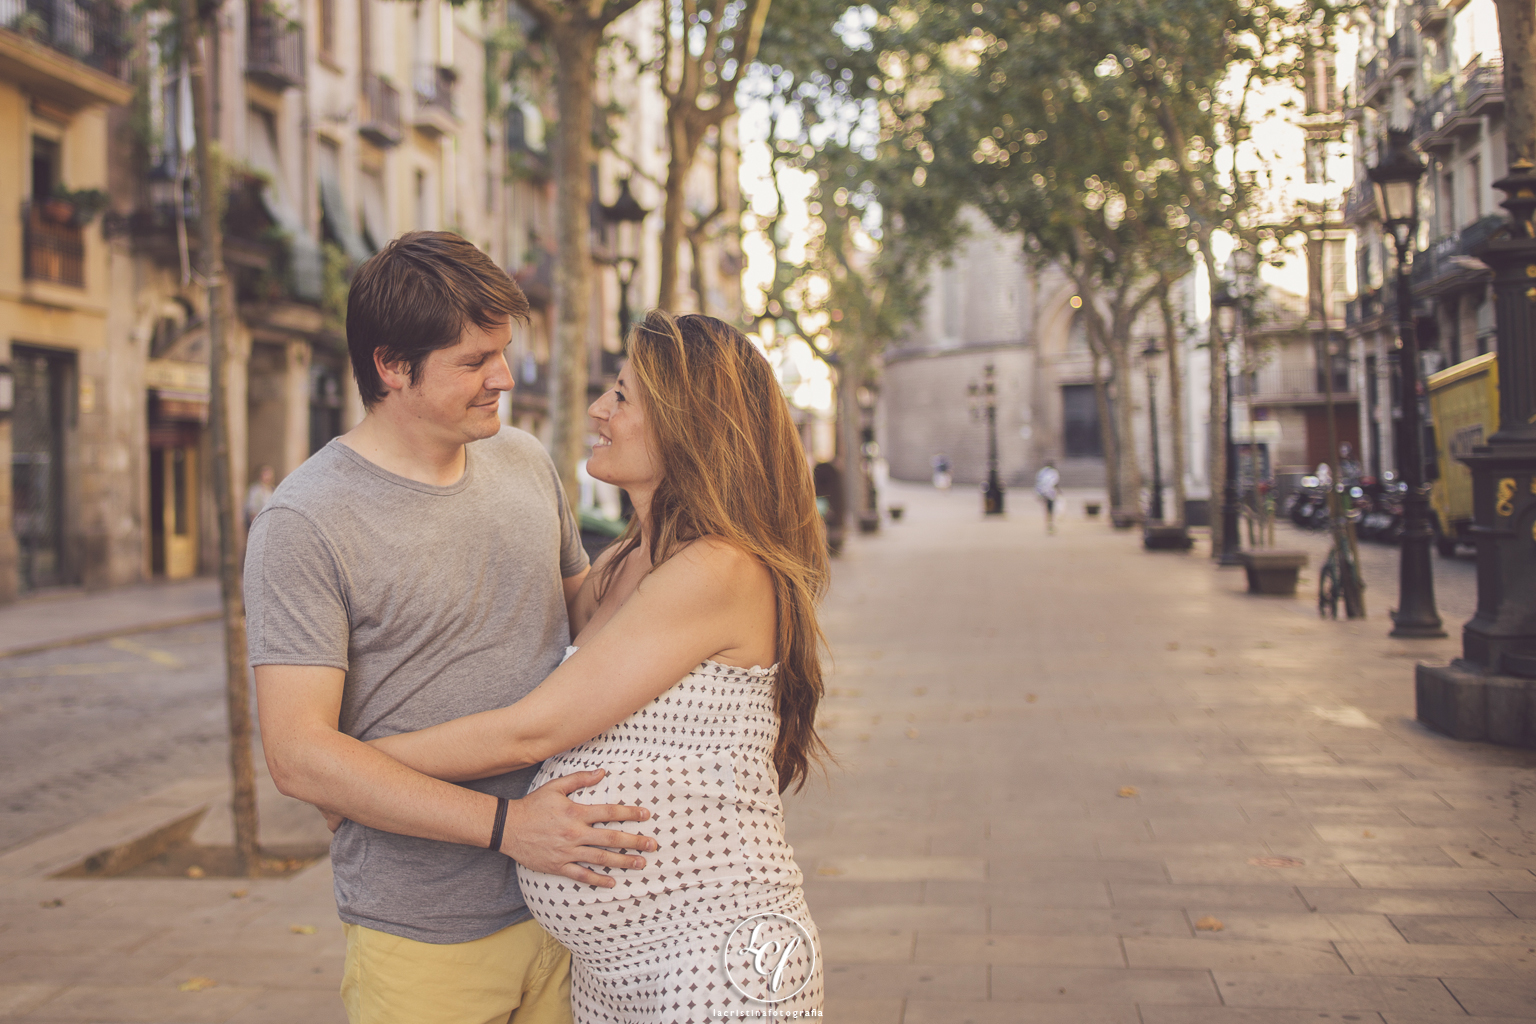 fotógrafo embarazo :: fotografía embarazada :: reportaje embarazo playa :: fotográfo embarazo barcelona